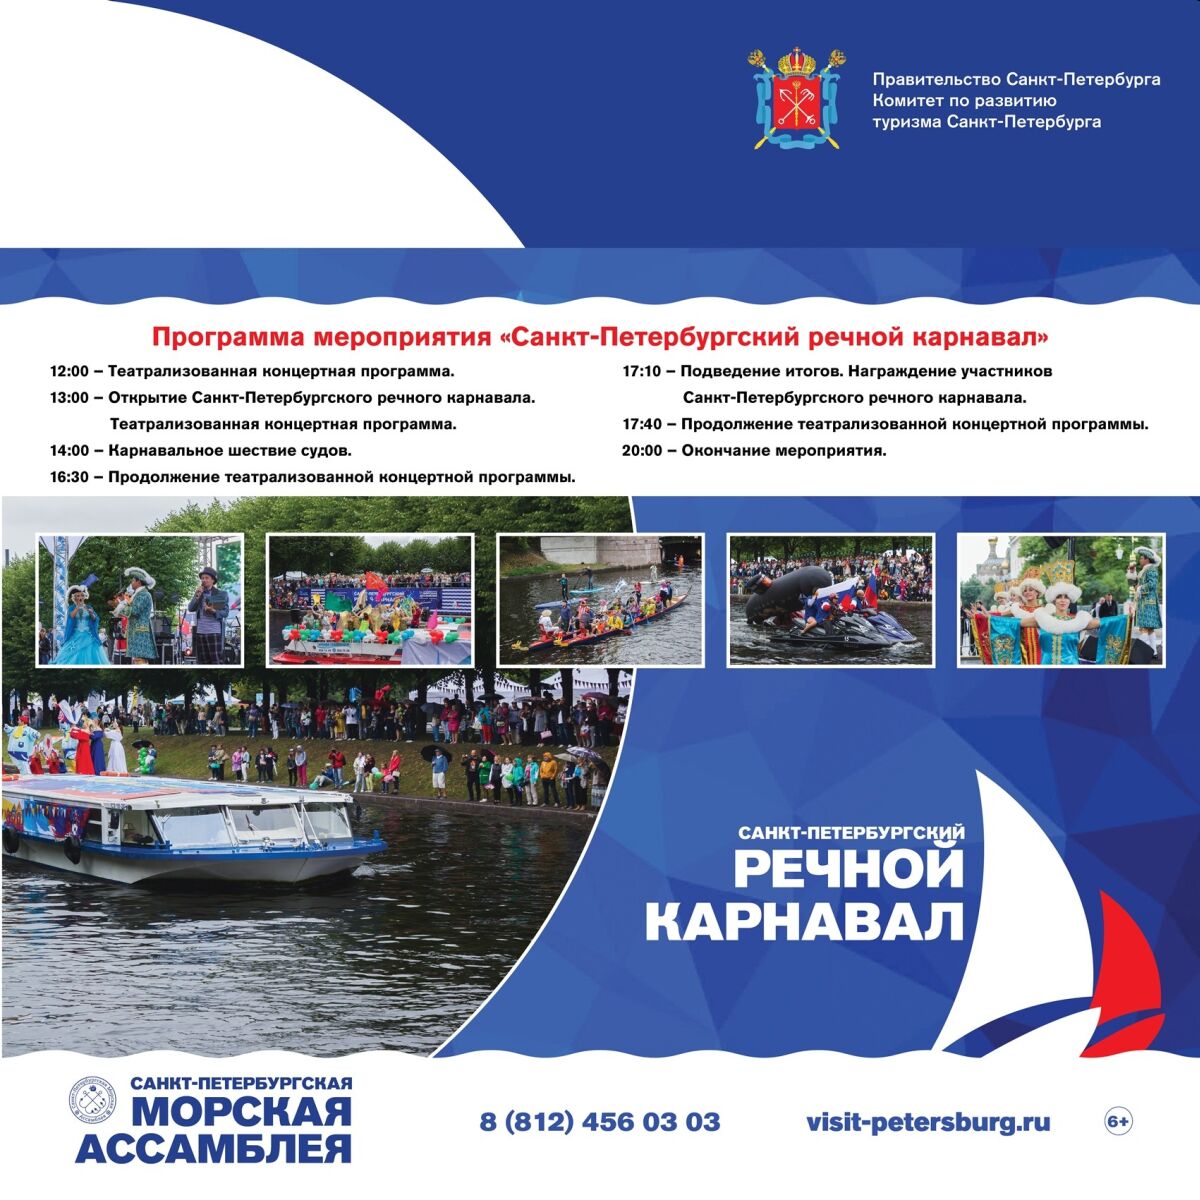 Программа речного карнавала в Санкт-Петербурге